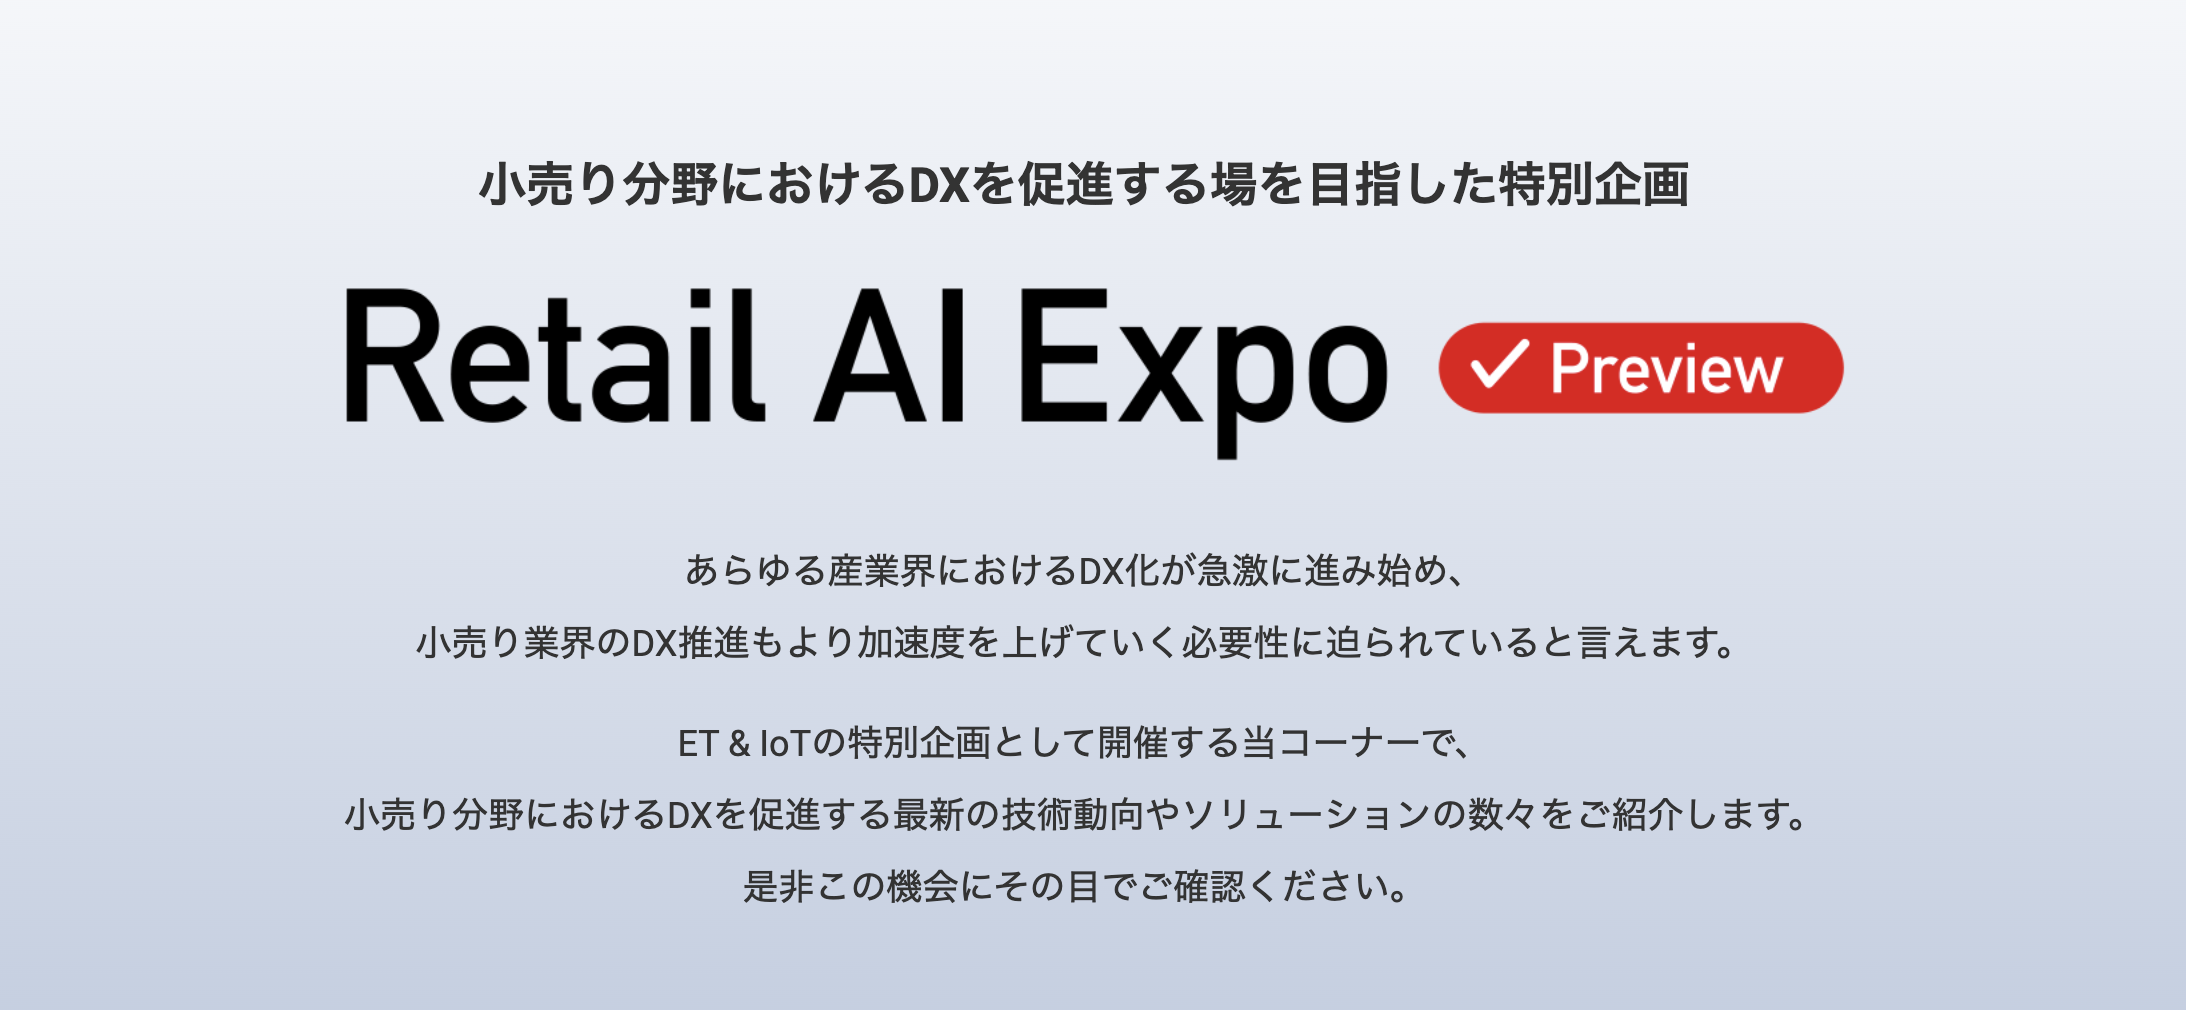 2021年11月17日(水)– 19日(金) Retail AI EXPO Previewに出展します！